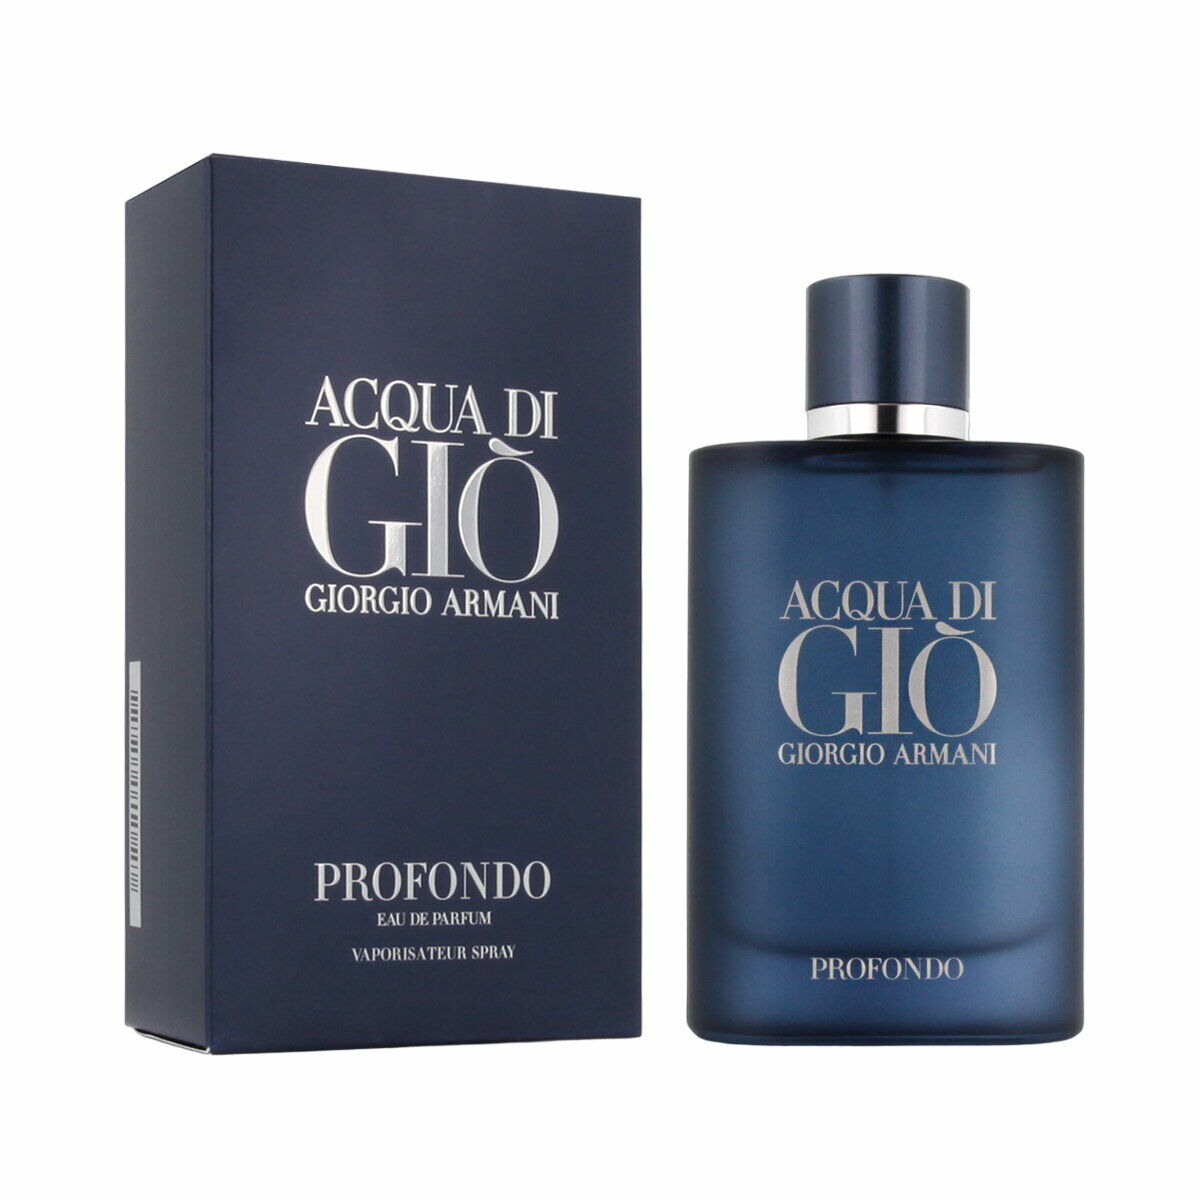 Men's Perfume Giorgio Armani EDP Acqua Di Giò Profondo 75 ml-0